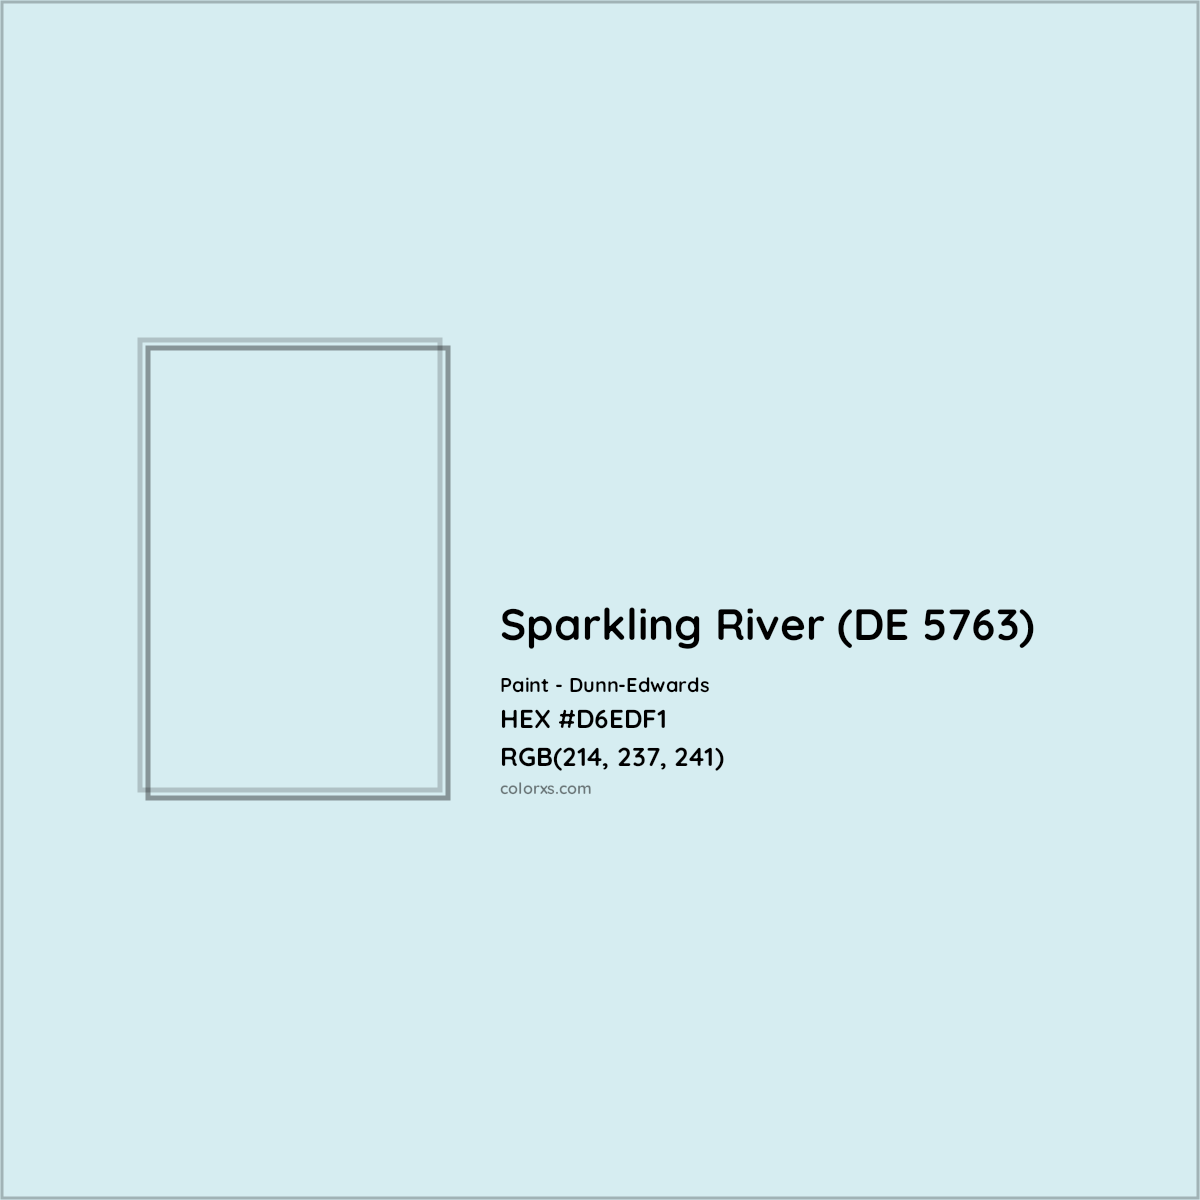 HEX #D6EDF1 Sparkling River (DE 5763) Paint Dunn-Edwards - Color Code